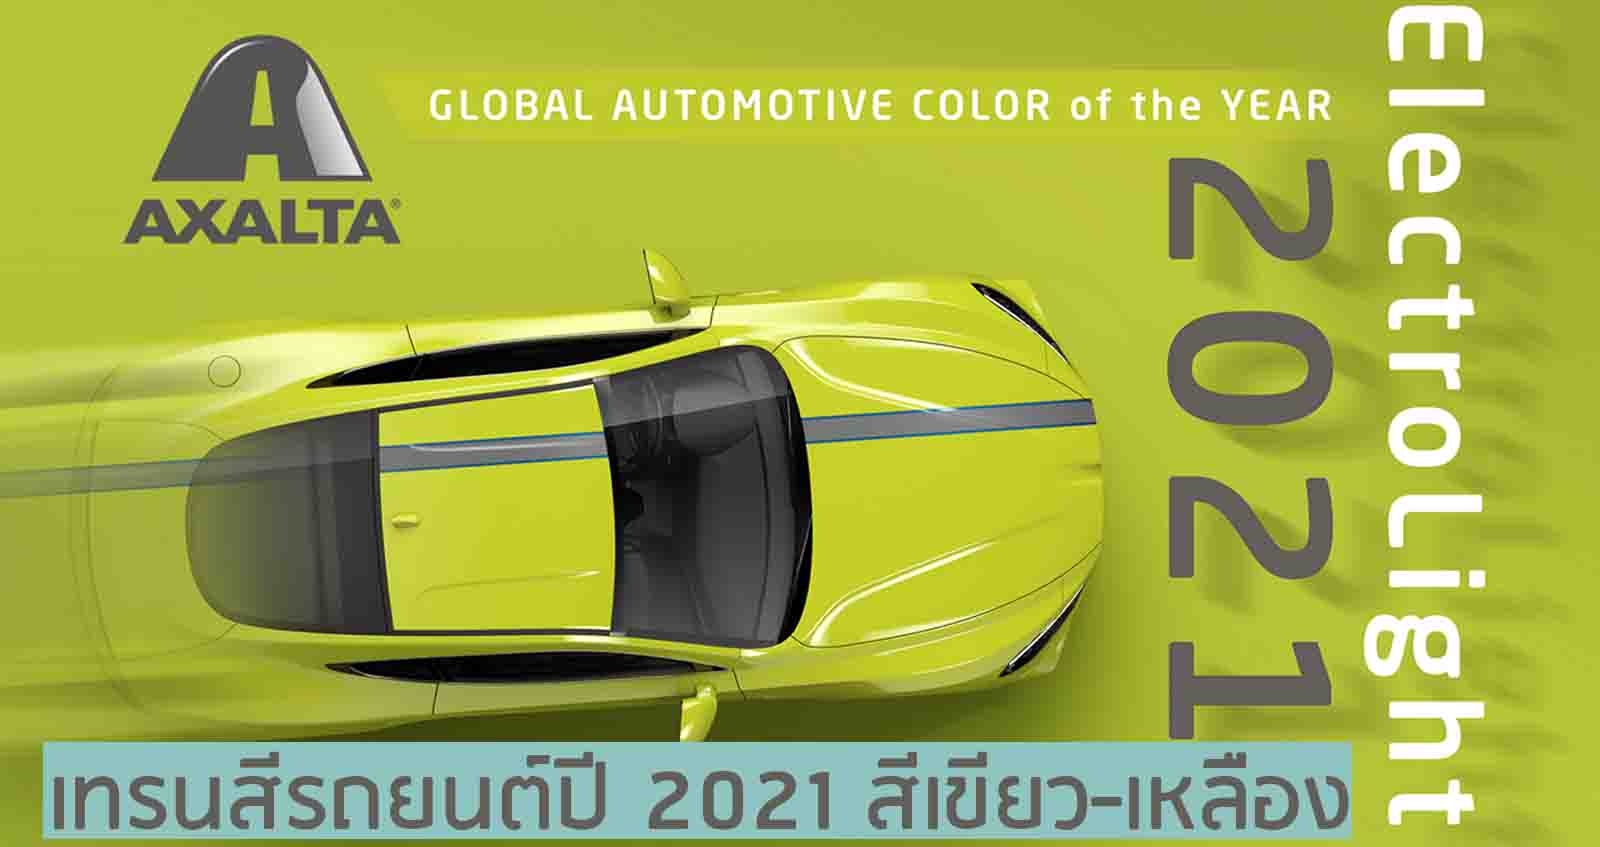 เทรนสีรถยนต์ปี 2021 สีเขียว-เหลือง สีอิเล็กโทรไลท์